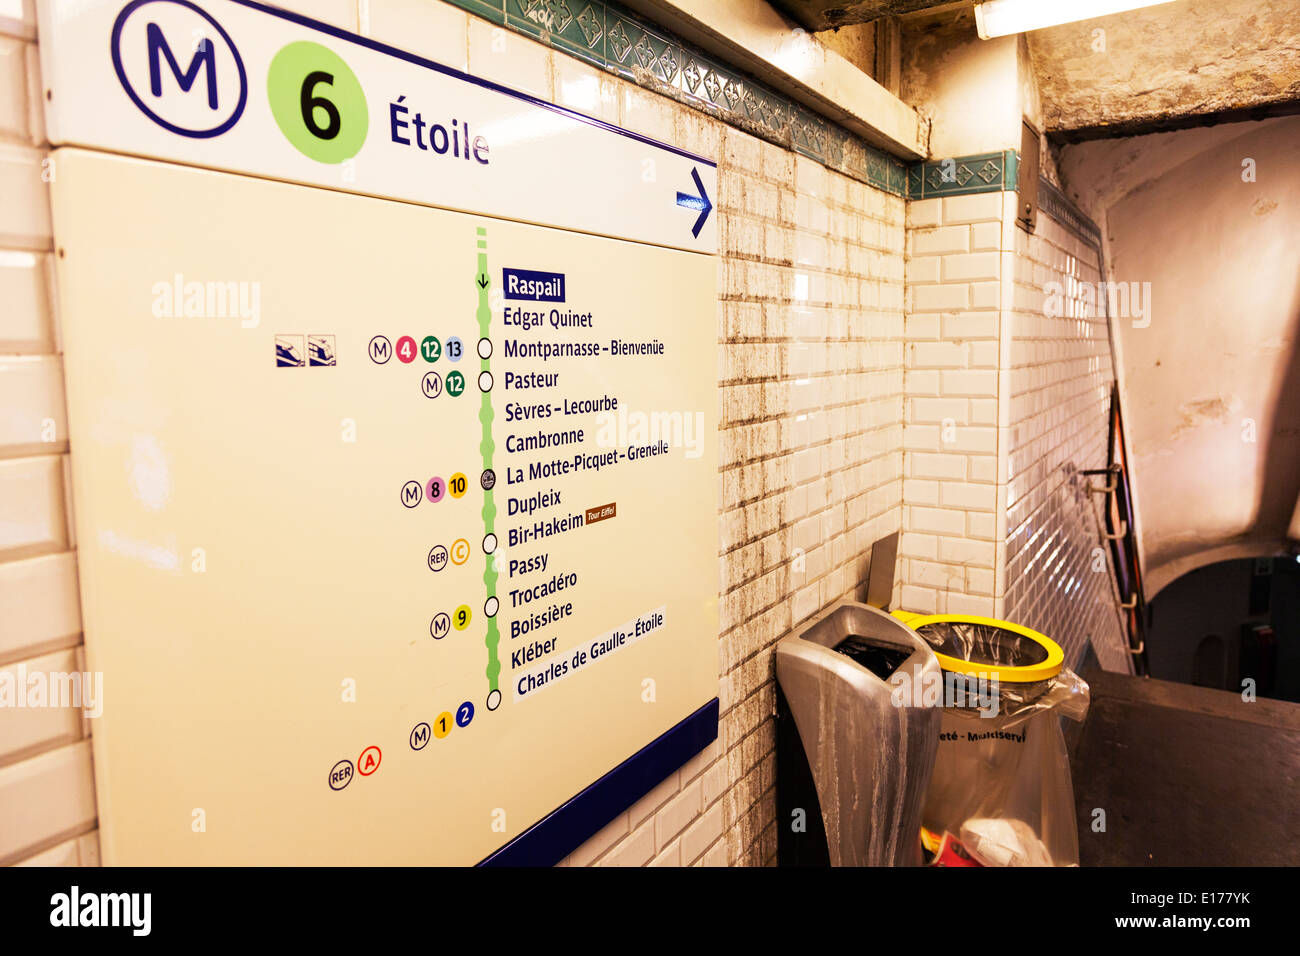 Paris Stadt unterirdische u-Bahn Zug Metropolitain Europa Europäische  Destination Schild Spielplan Etoile Stockfotografie - Alamy